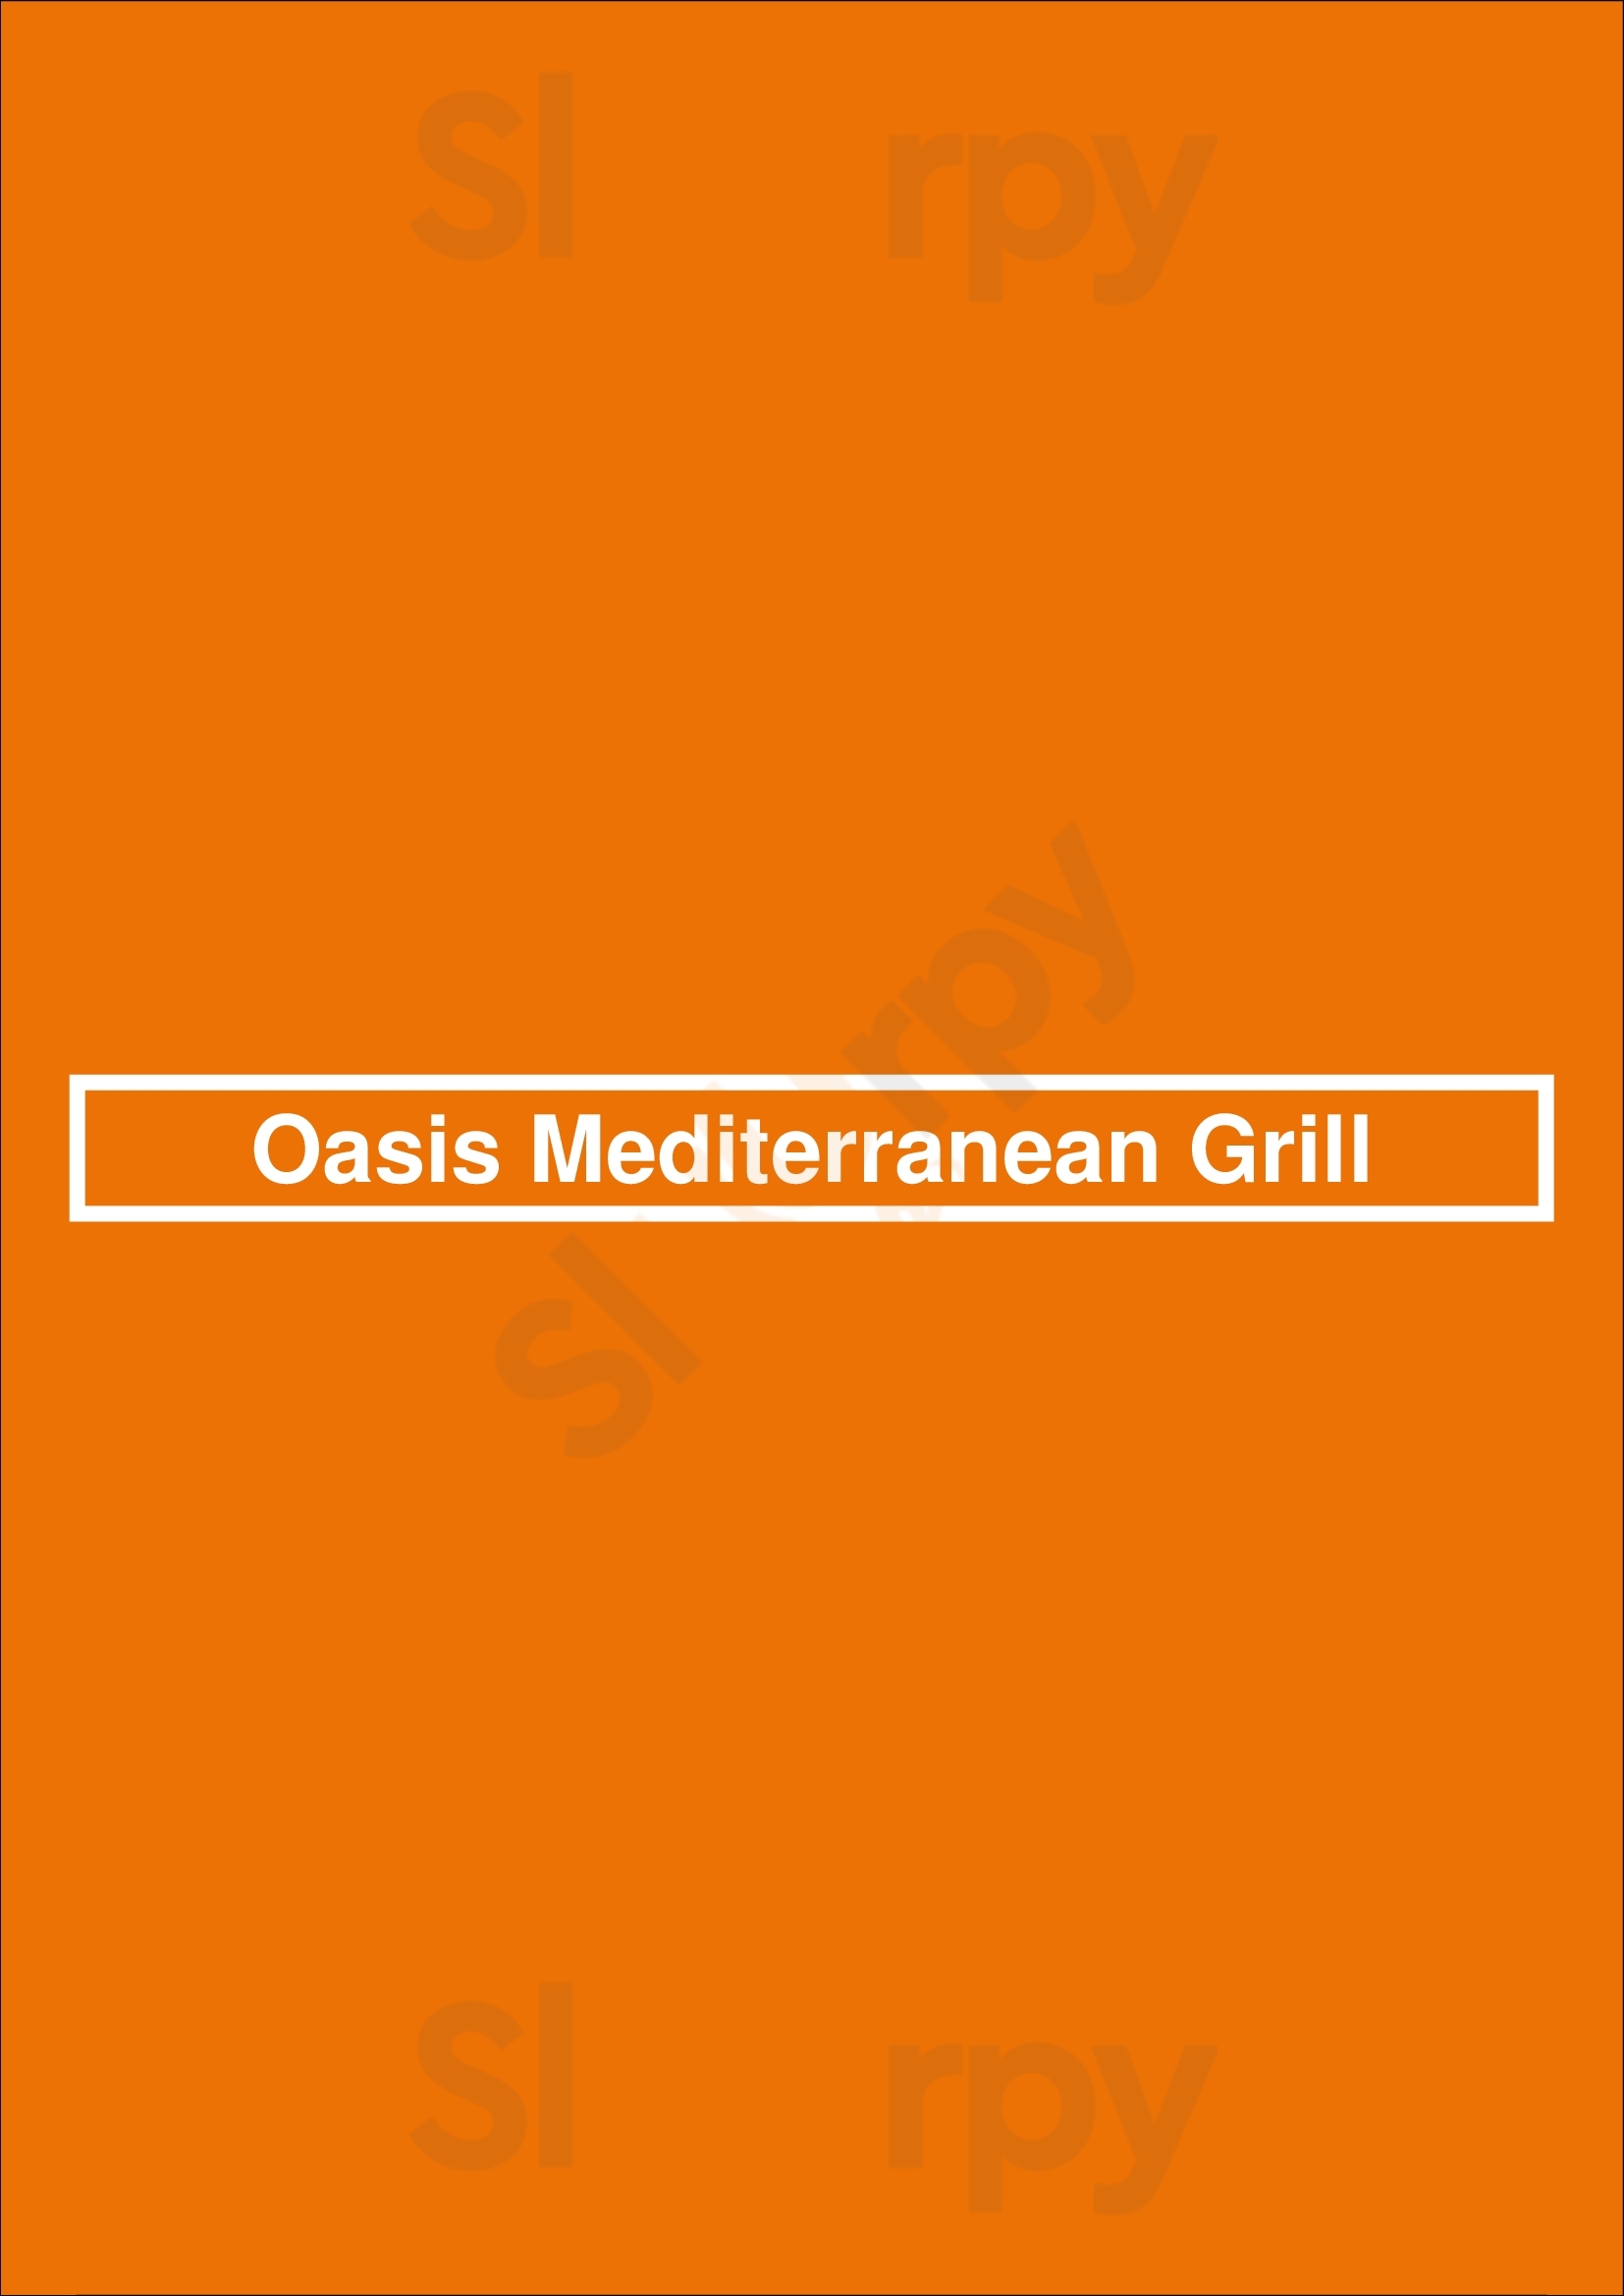 Oasis Mediterranean Grill Peterborough Menu - 1